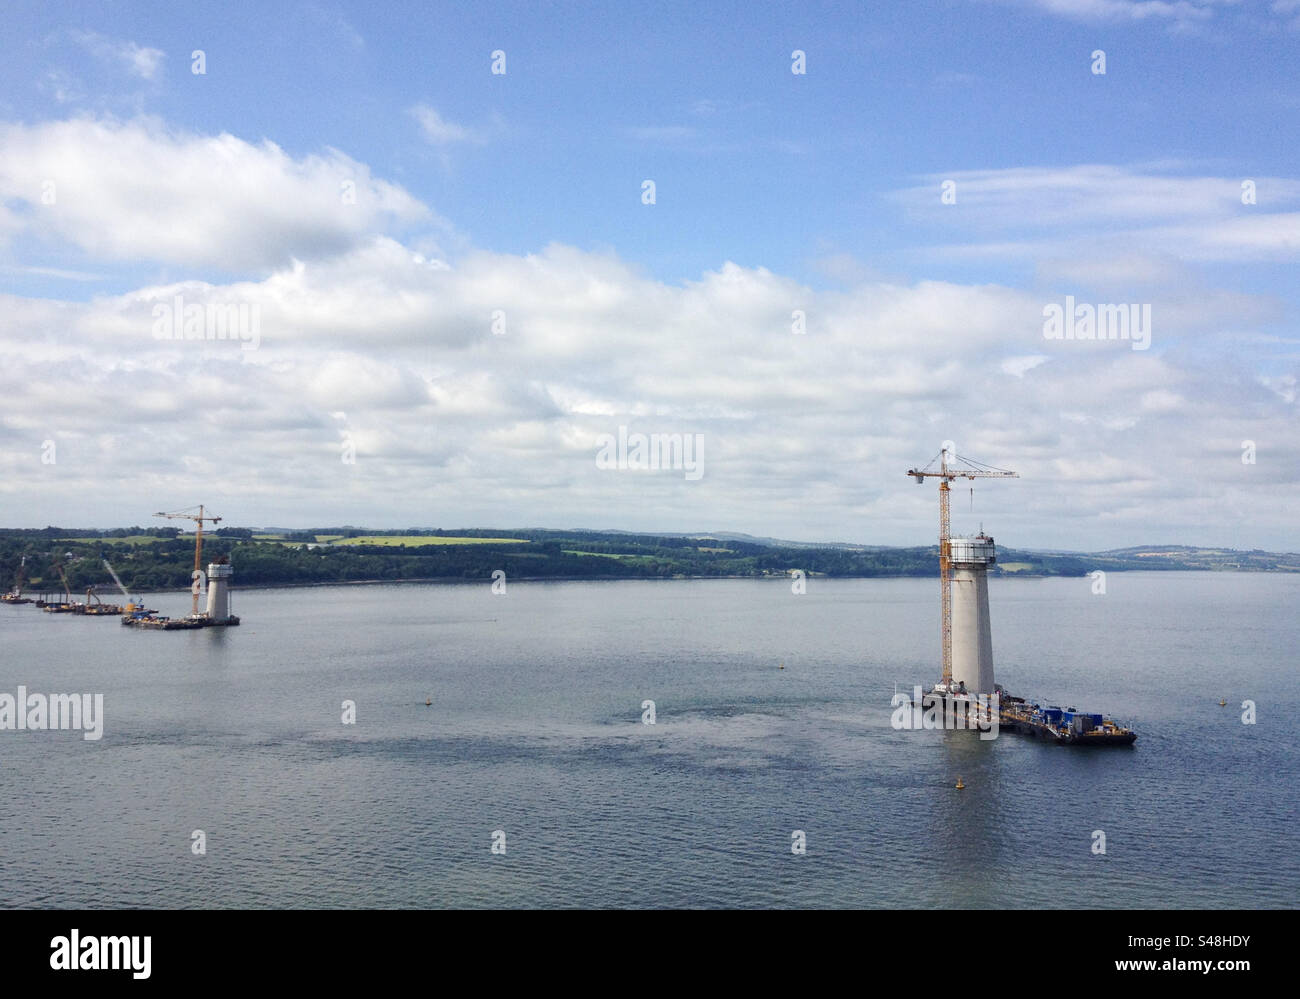 Vista dall'alto delle torri del ponte del Queensferry Crossing in costruzione sul Firth of Forth nel 2014, Scozia, Regno Unito Foto Stock